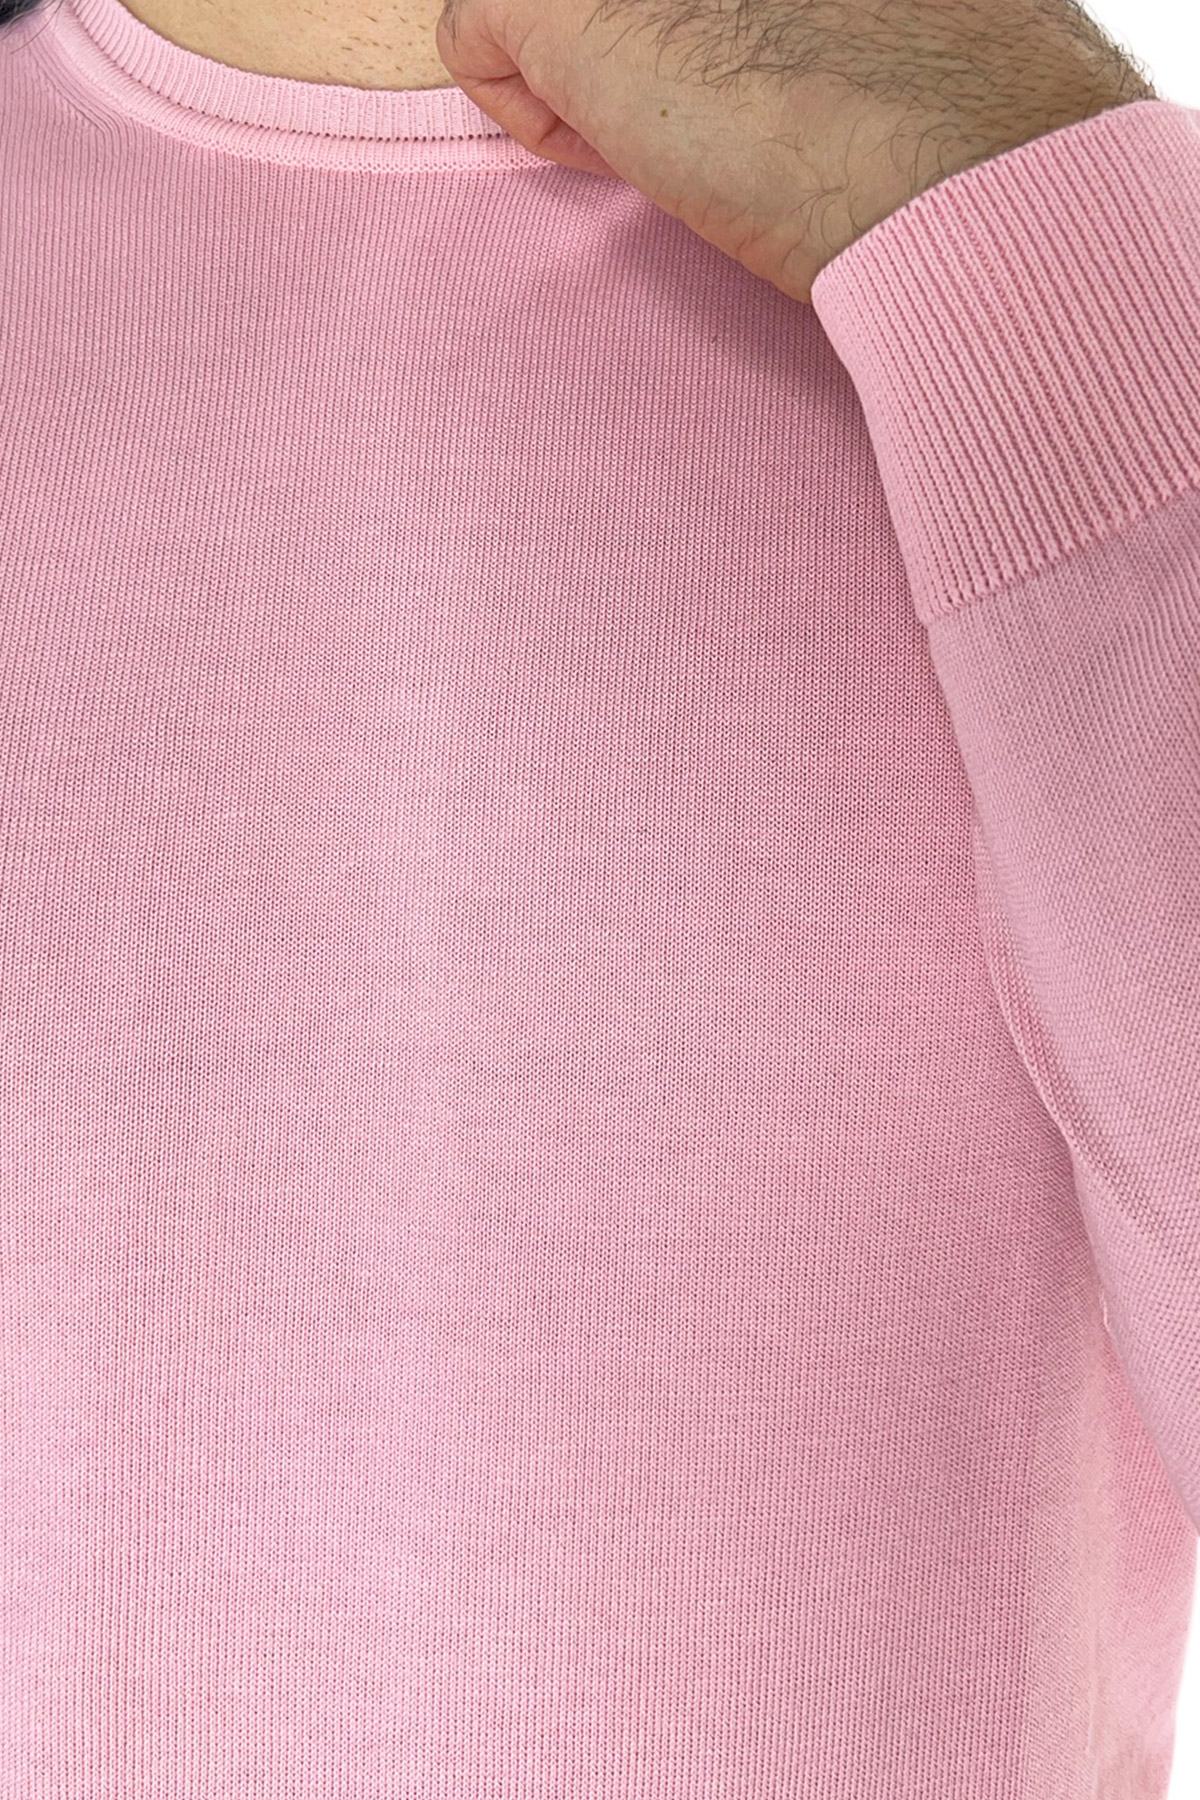 Maglioncino da uomo rosa maniche lunghe 100% cotone di filo tinta unita finezza 12